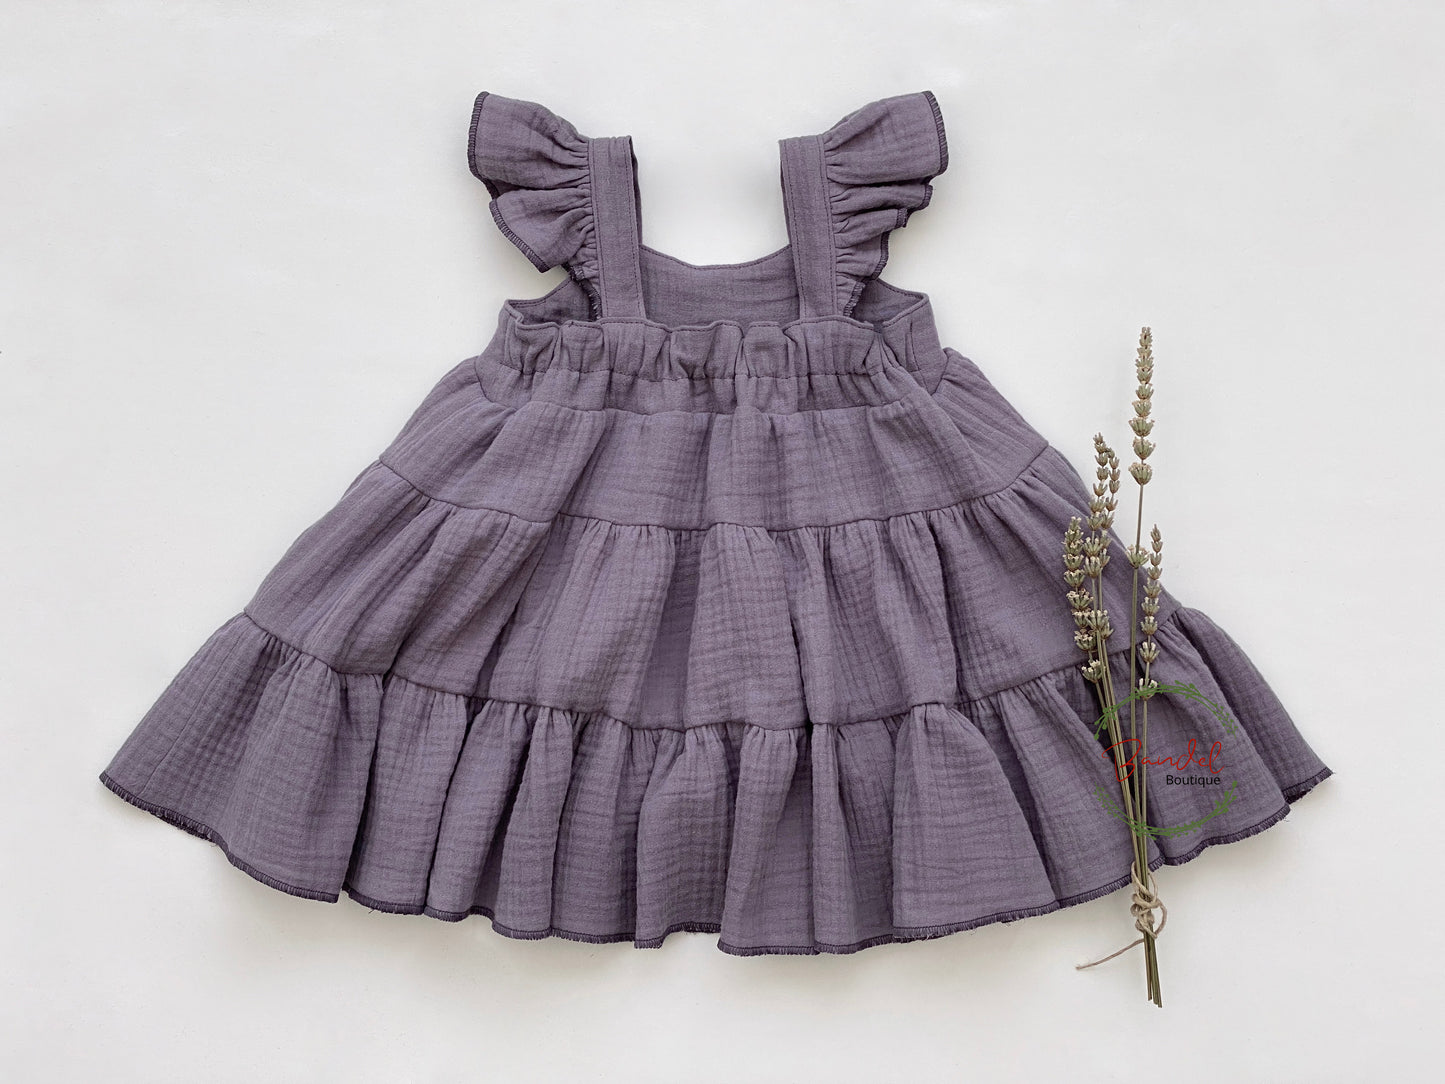 Lilac Flutter Sleeve Dress